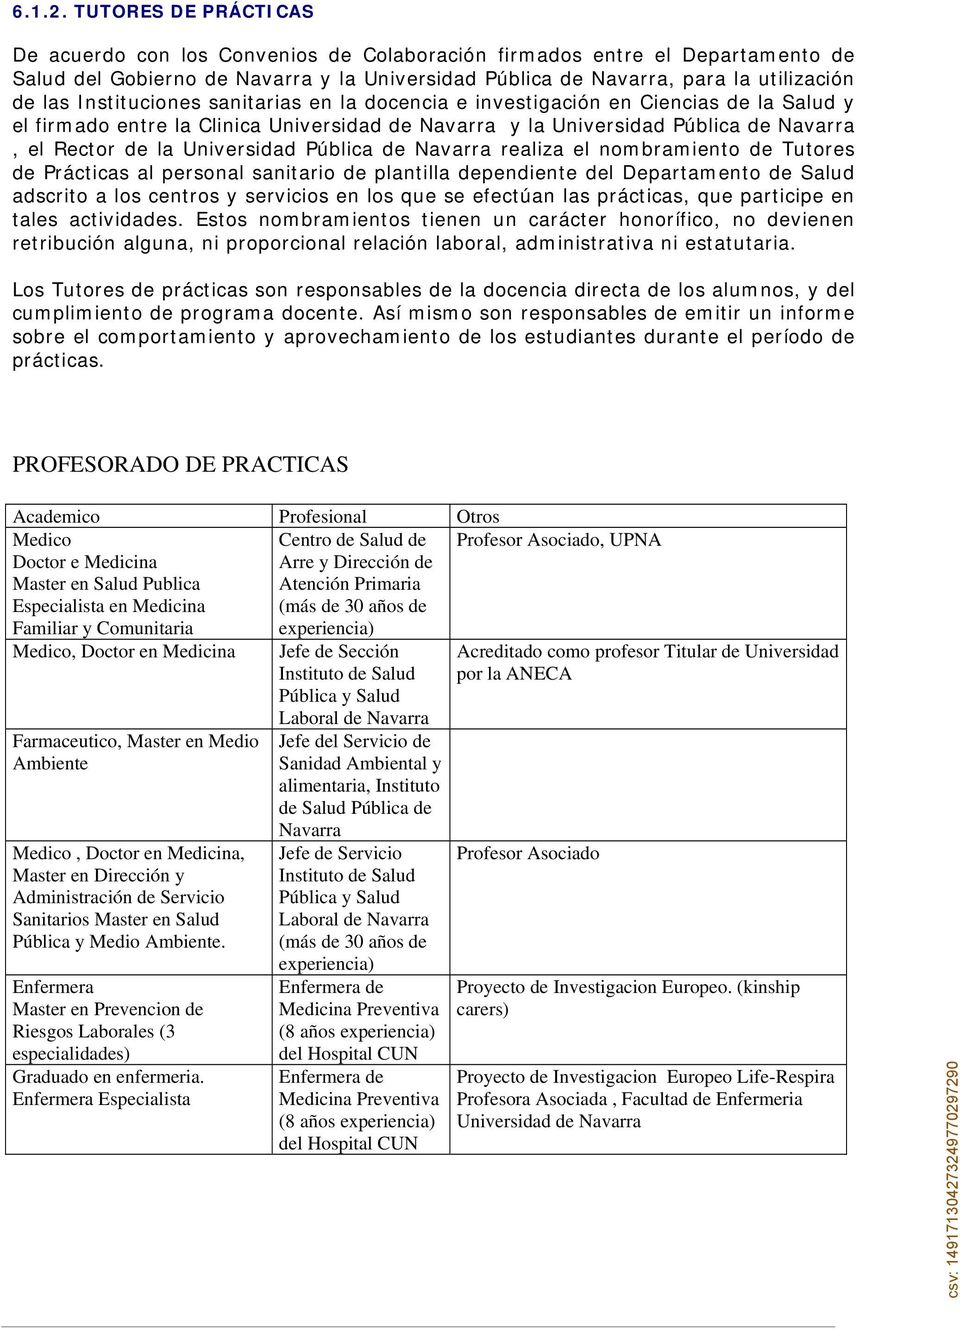 Instituciones sanitarias en la docencia e investigación en Ciencias de la Salud y el firmado entre la Clinica Universidad de Navarra y la Universidad Pública de Navarra, el Rector de la Universidad